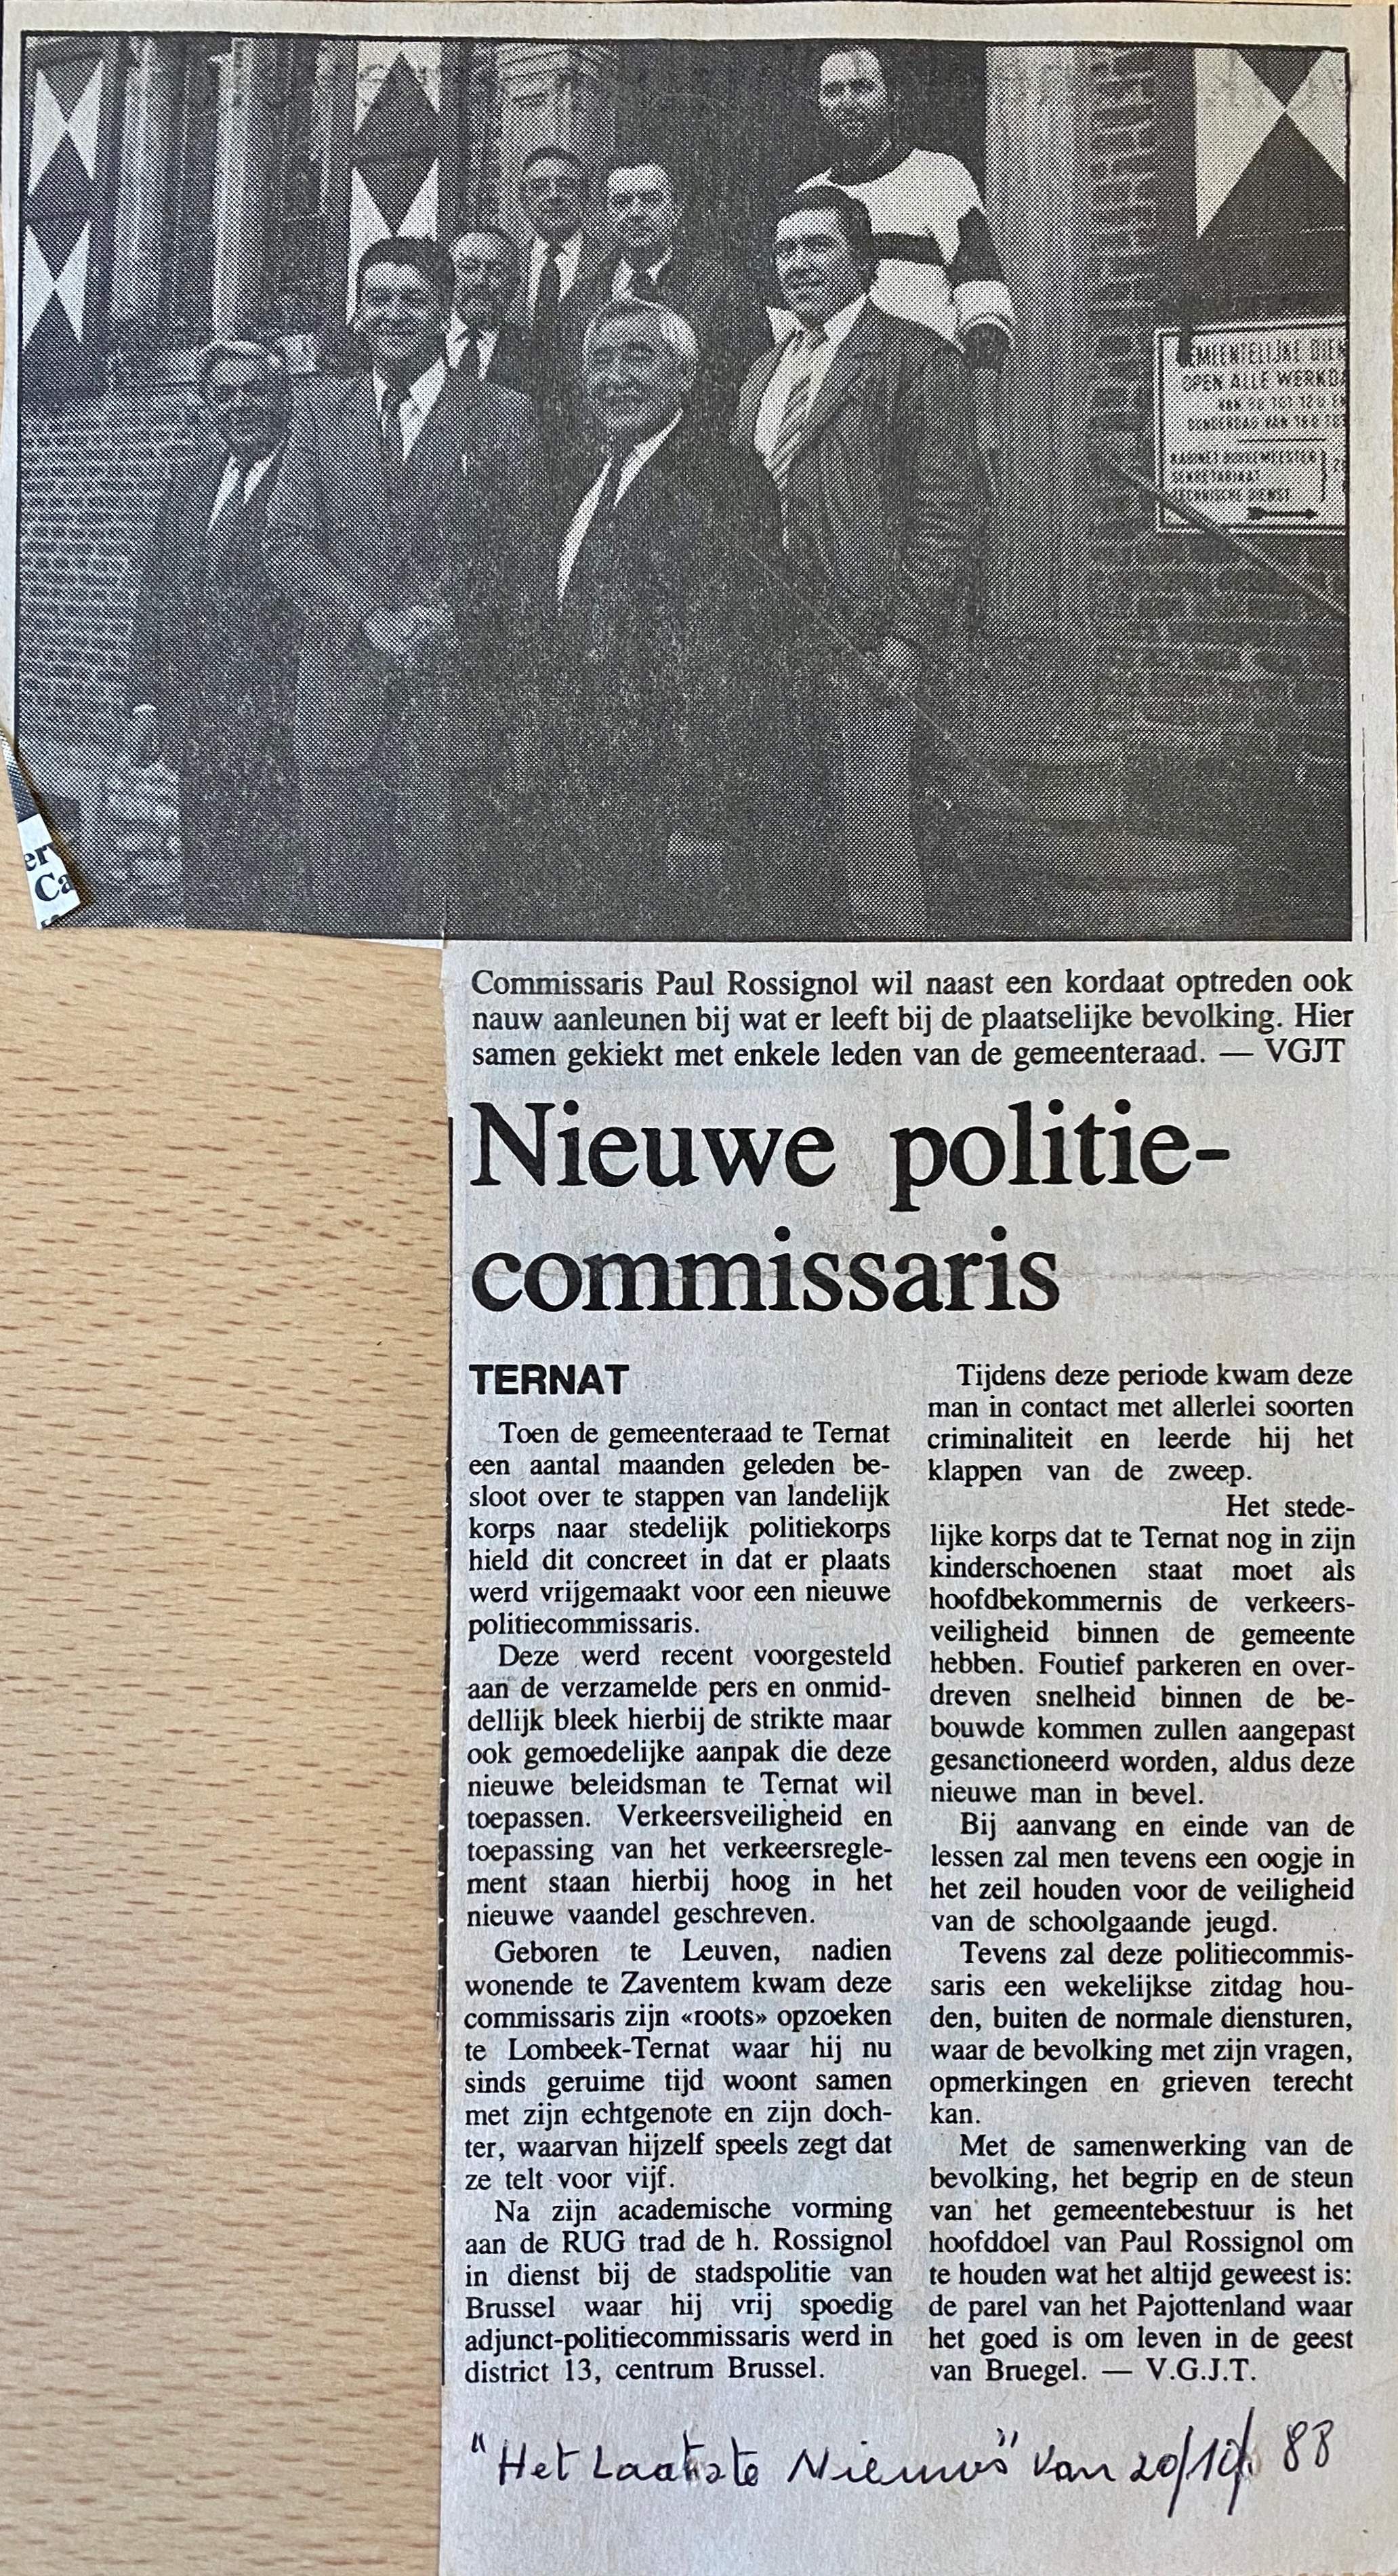 Dit artikel gaat over de nieuwe politiecommissaris uit" Het Laatste Nieuws" van 20/12/1988.